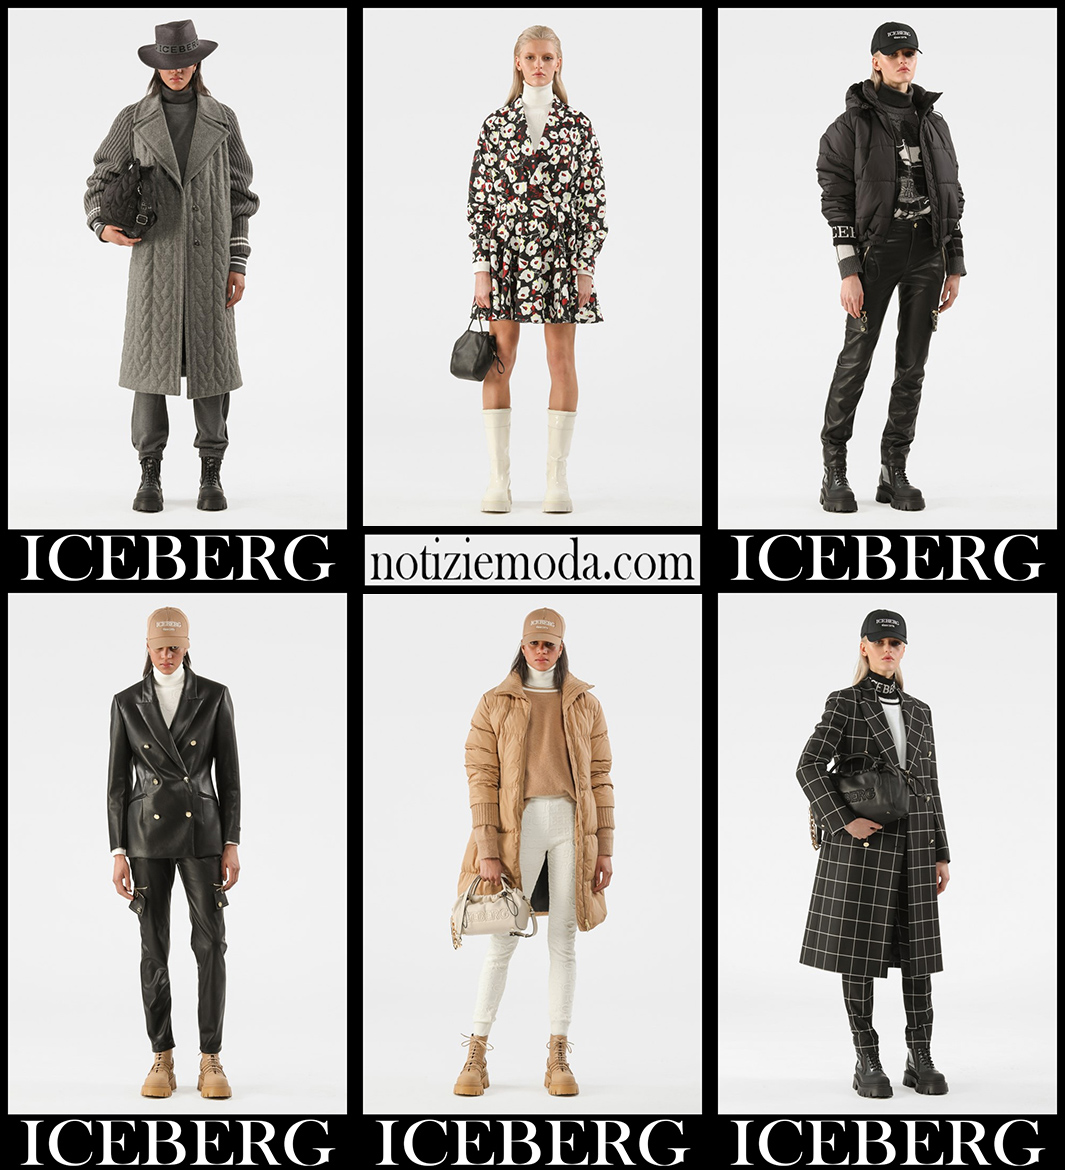 Collezione Iceberg autunno inverno 21 2022 moda donna